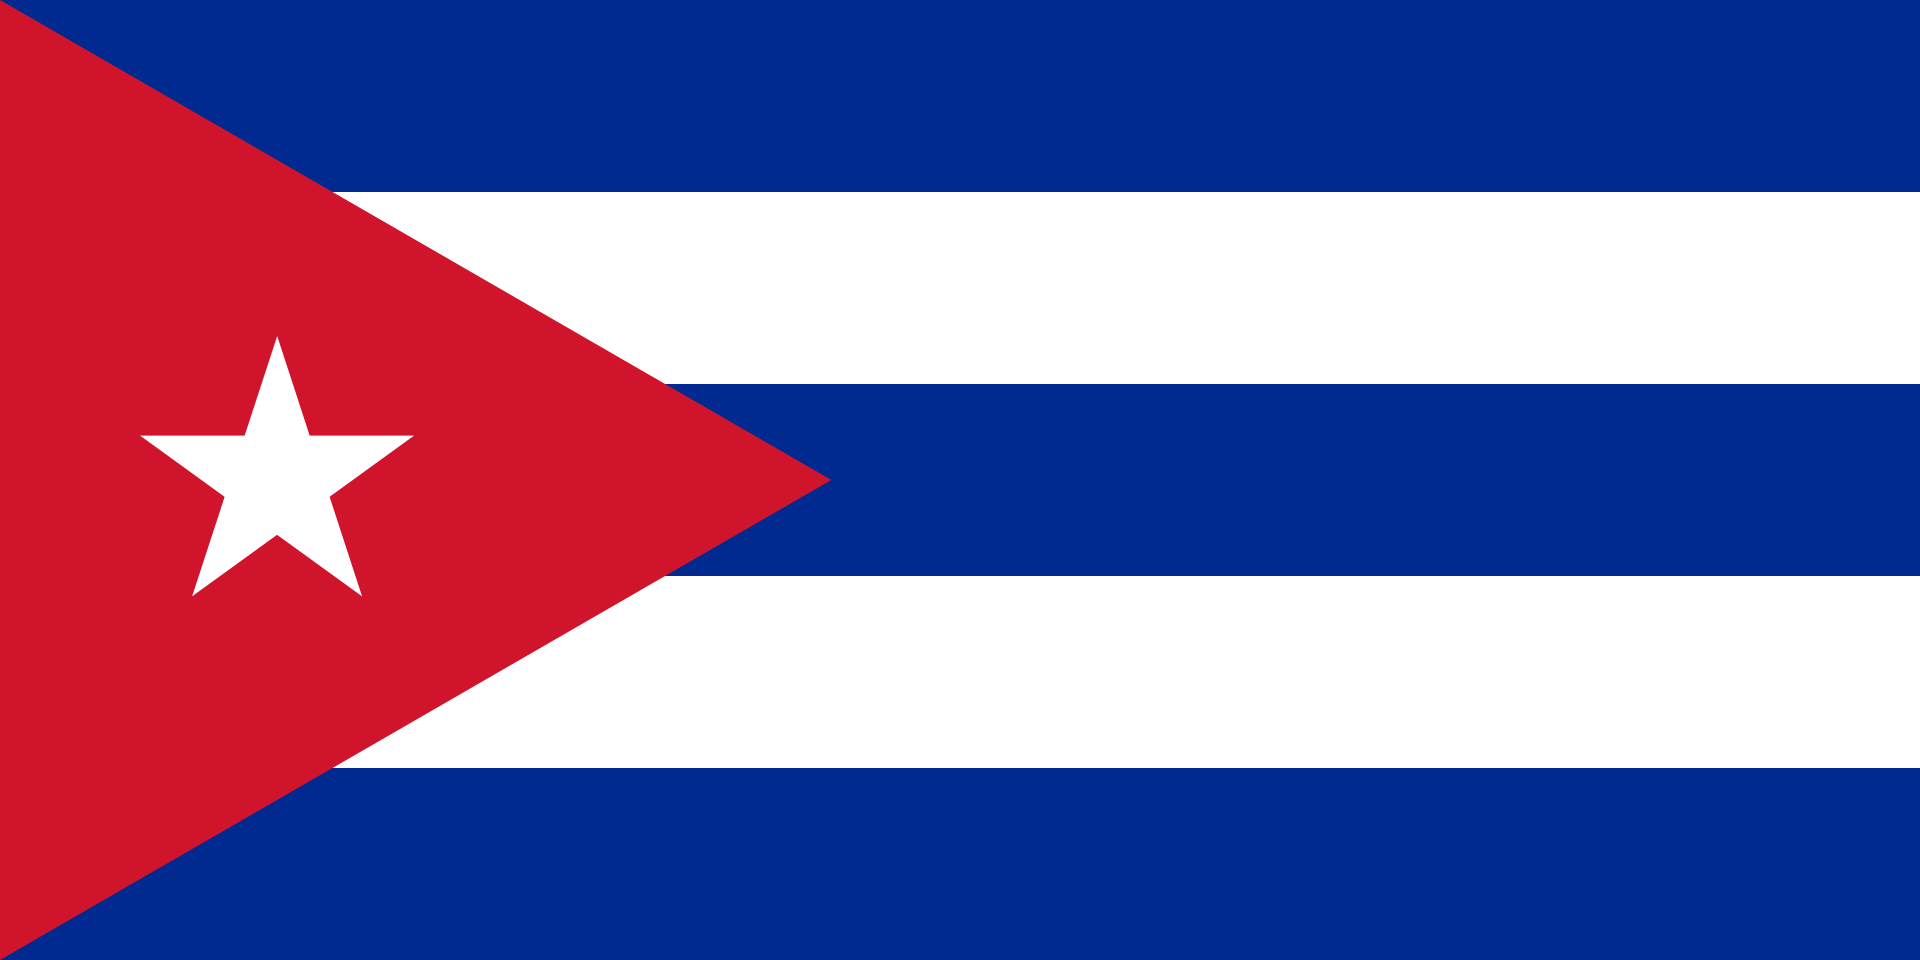 SelecciÃ³n de fÃºtbol de Cuba - Wikipedia, la enciclopedia libre